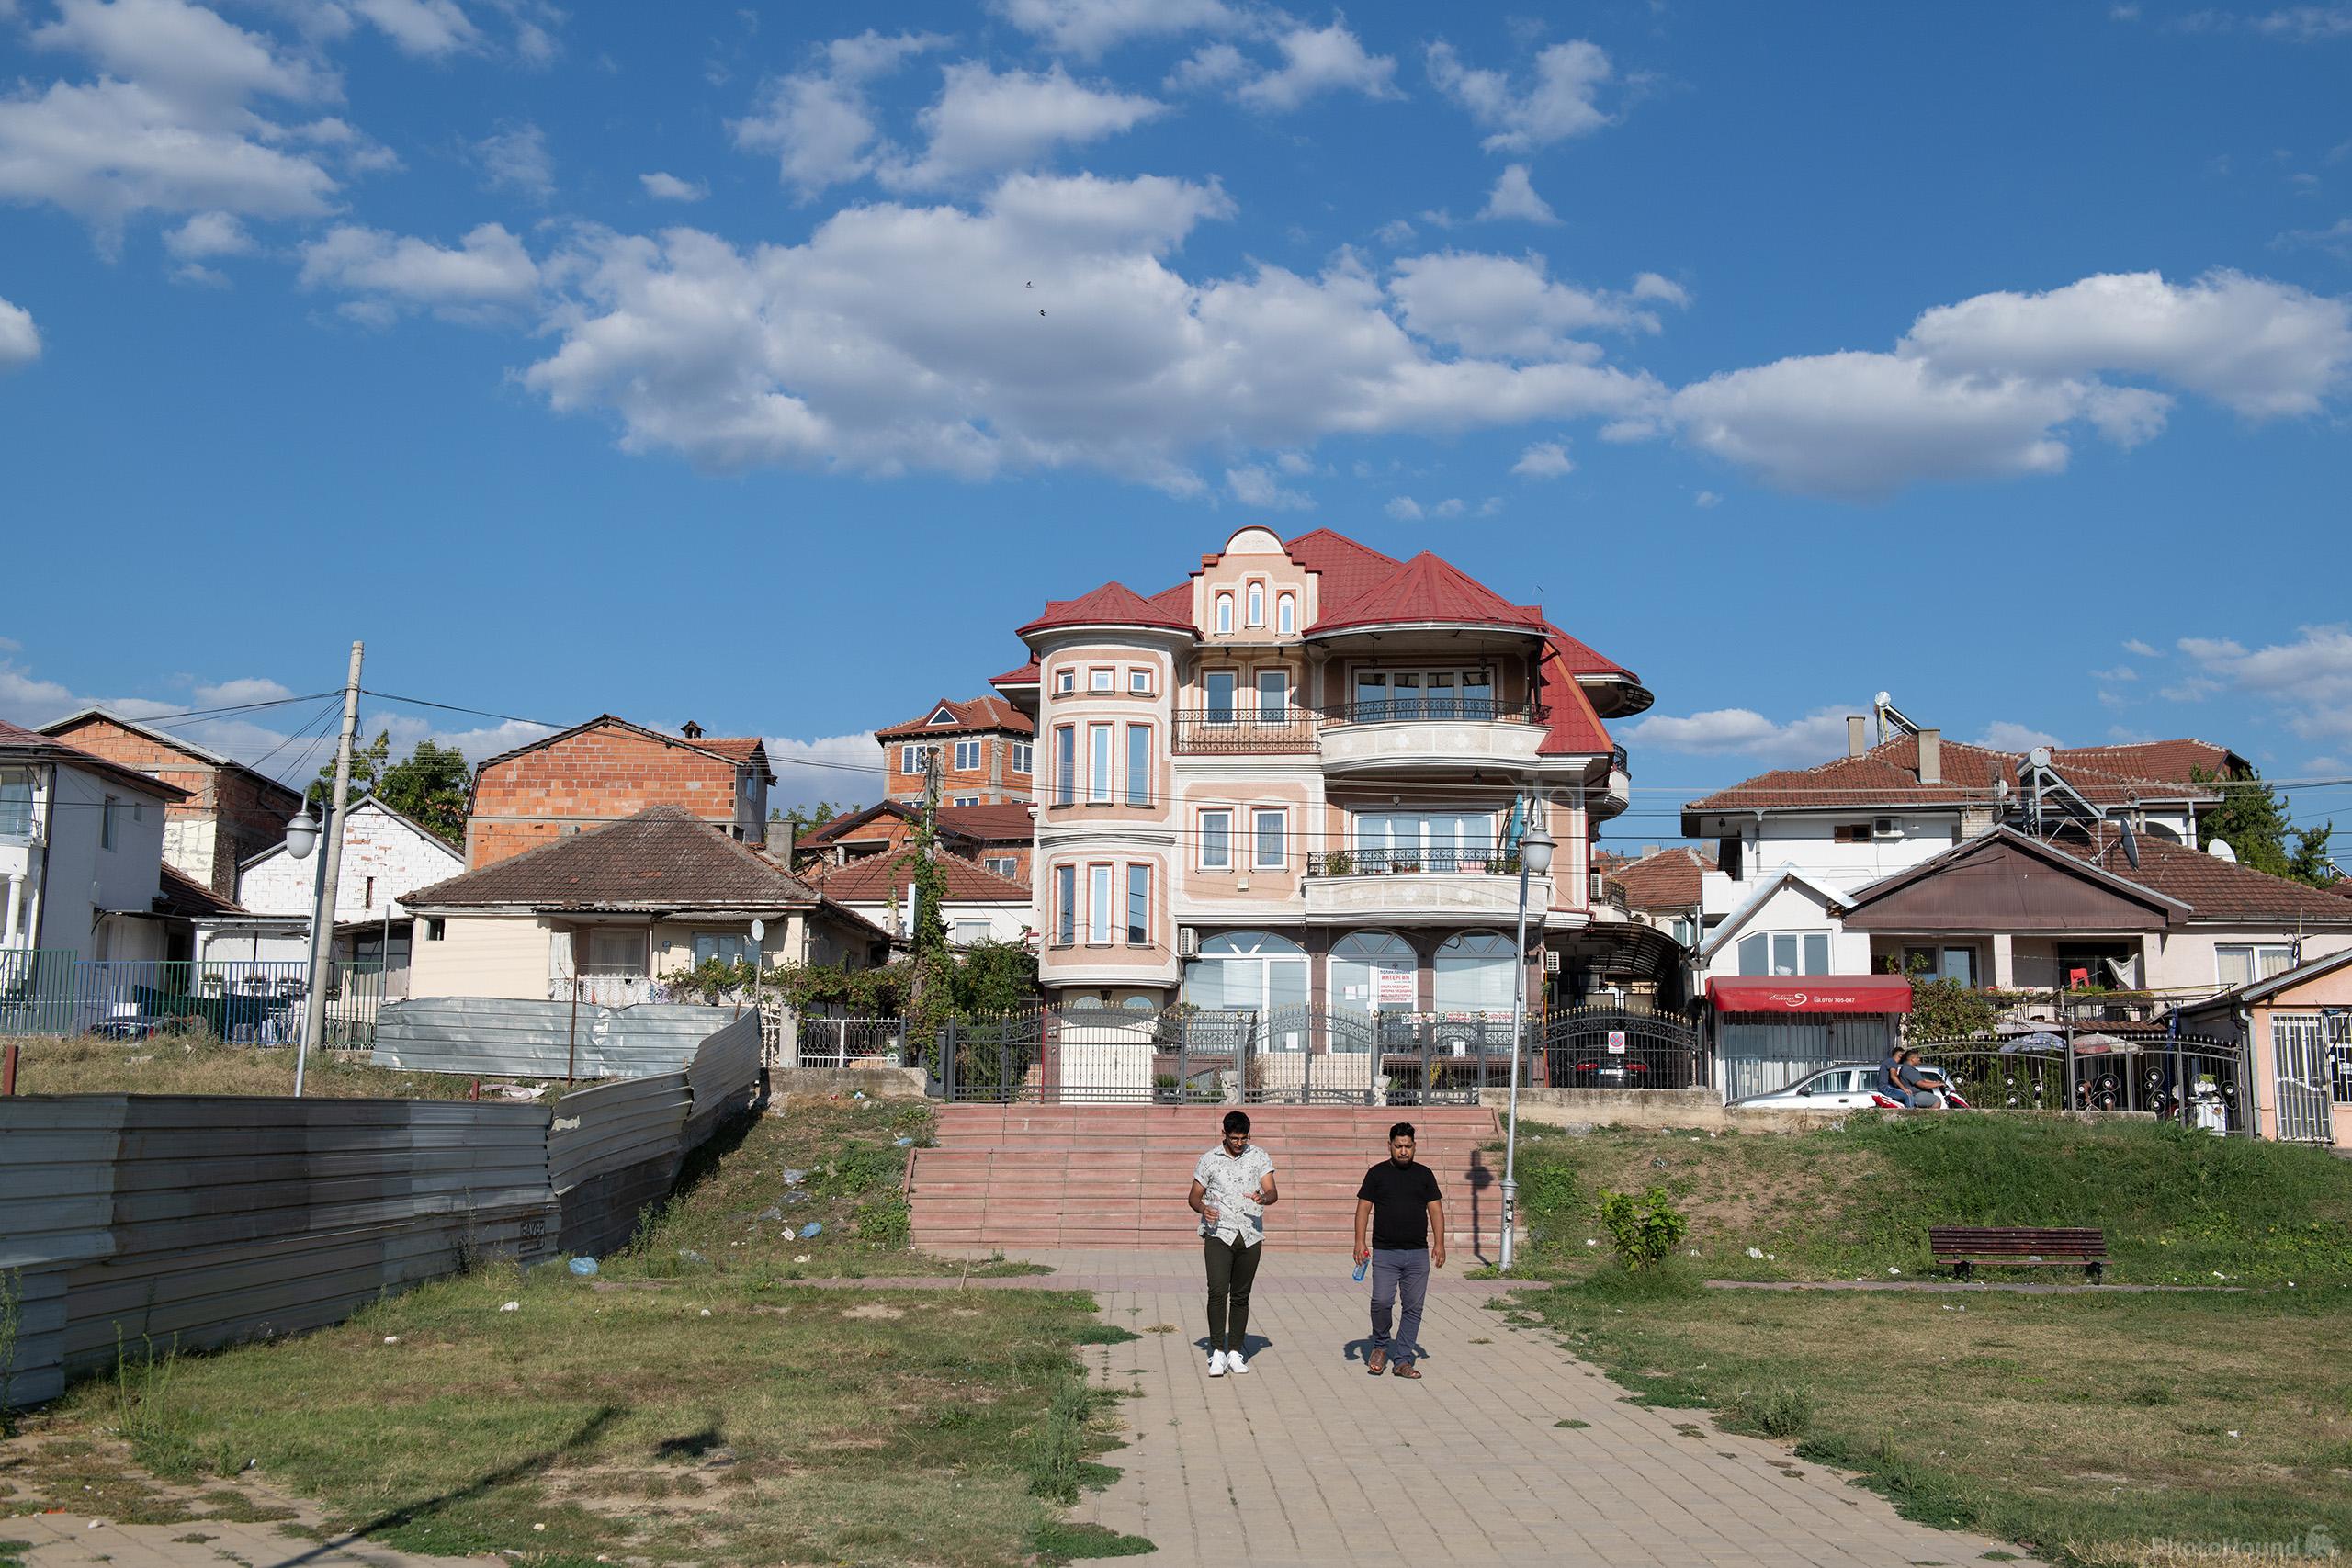 Image of Šutka (Shuto Orizari) Municipality by Luka Esenko